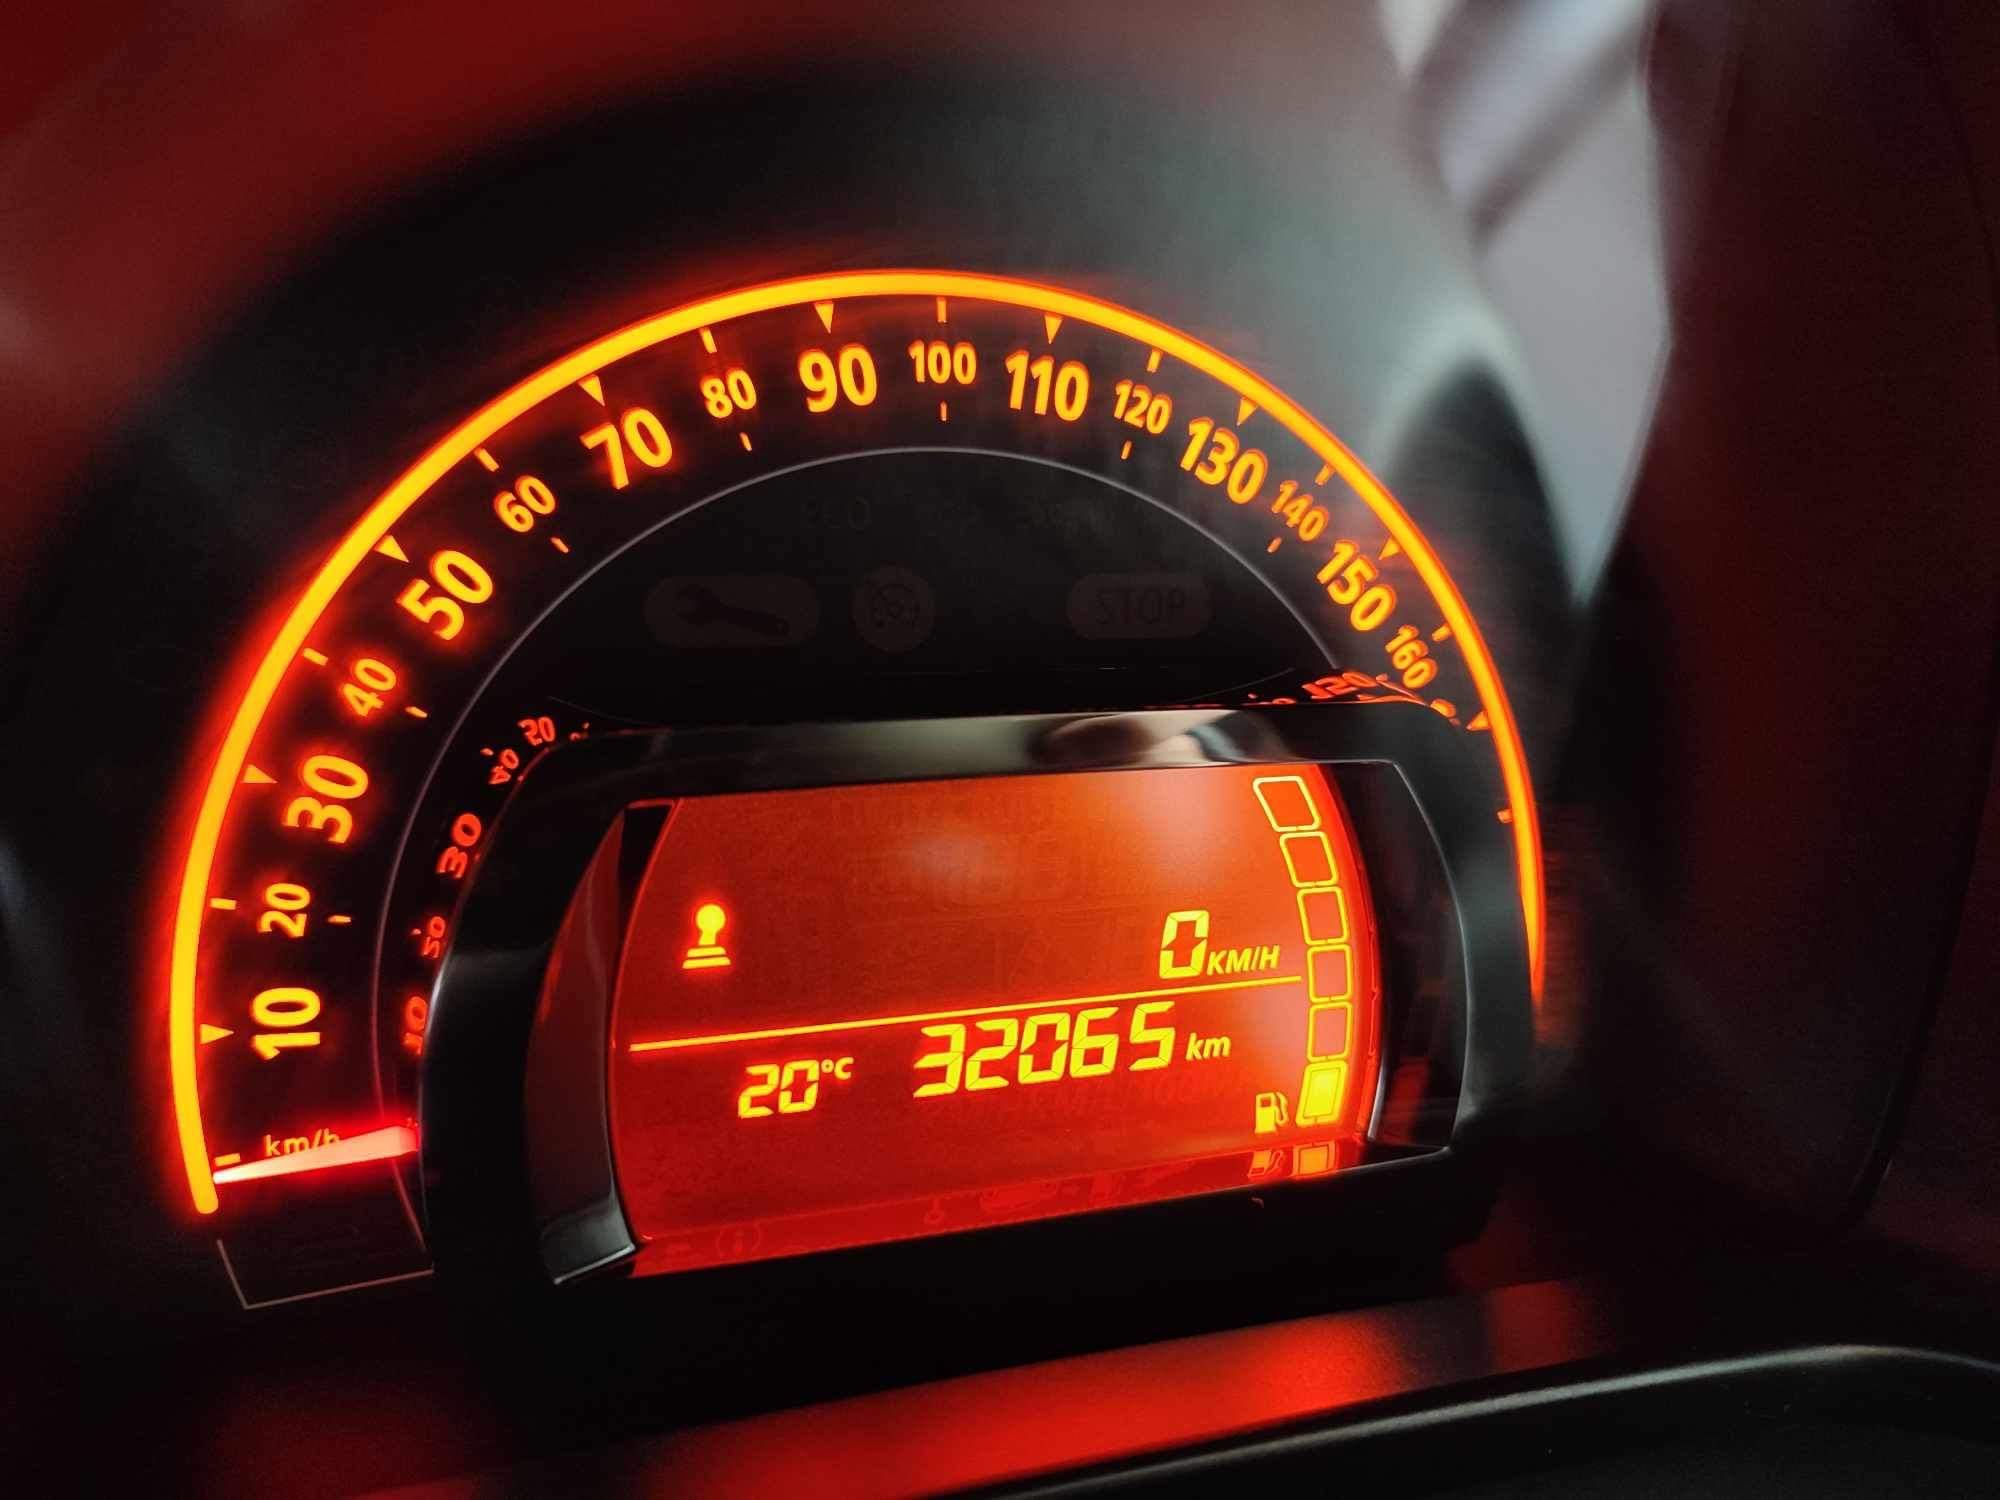 Renault Twingo iii 2019/12 32.065 km